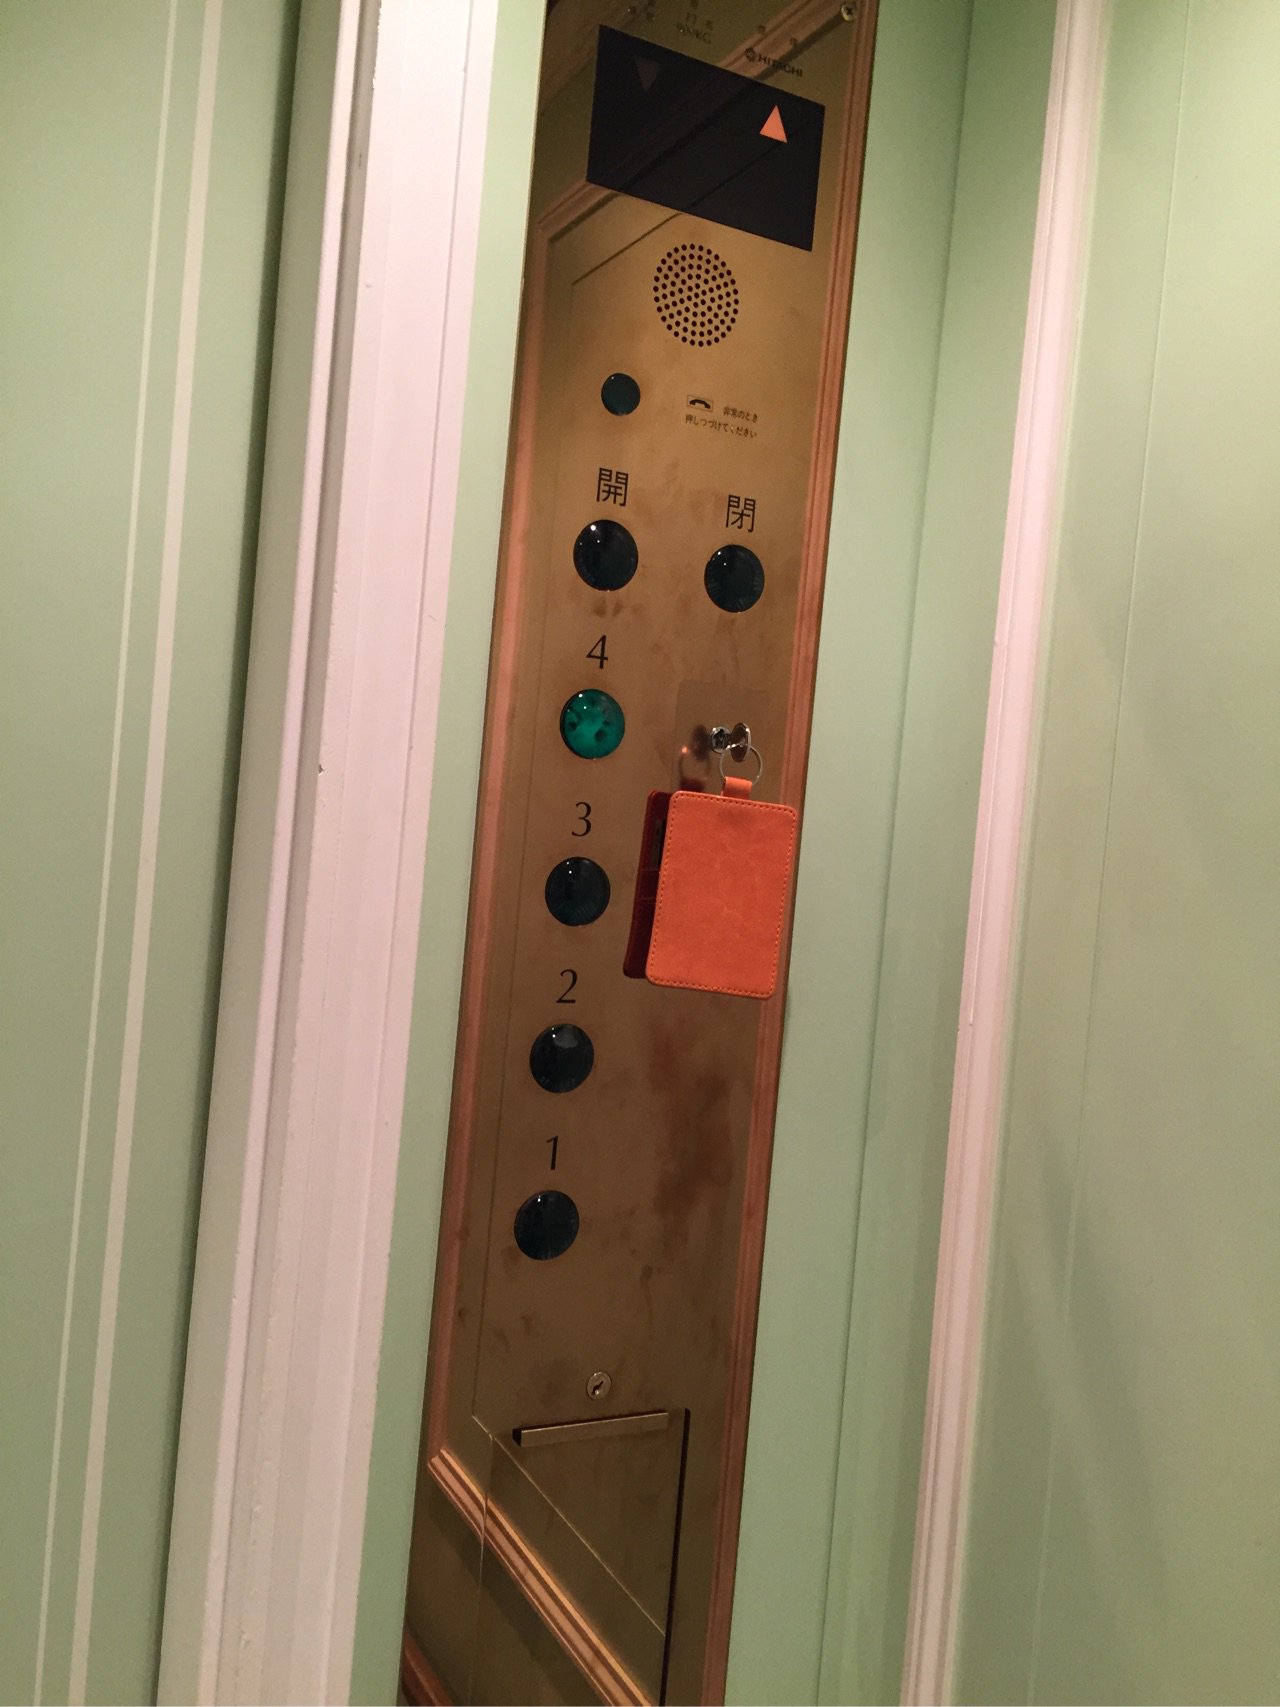 ホテルアムステルダムのローラアシュレイルームのフロアには鍵がないとエレベーターが動かない。 https://t.co/WrLk7pnfd9